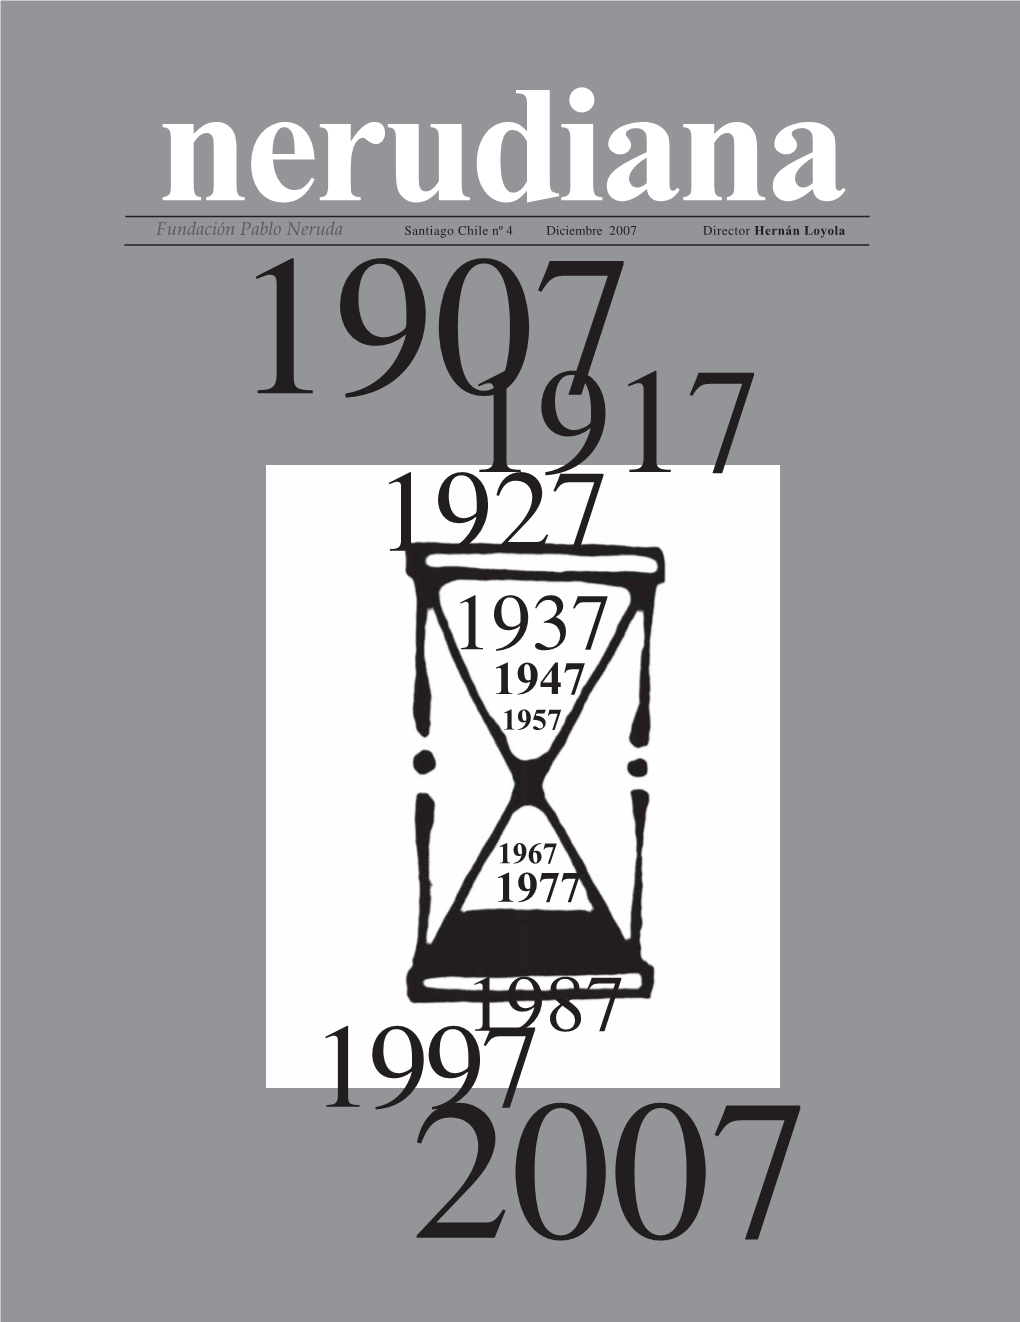 Nerudiananerudiana – Nº 4 – 2007 [ 1 ] Fundación Pablo Neruda Santiago Chile Nº 4 Diciembre 2007 Director Hernán Loyola 19071917 1927 1937 1947 1957